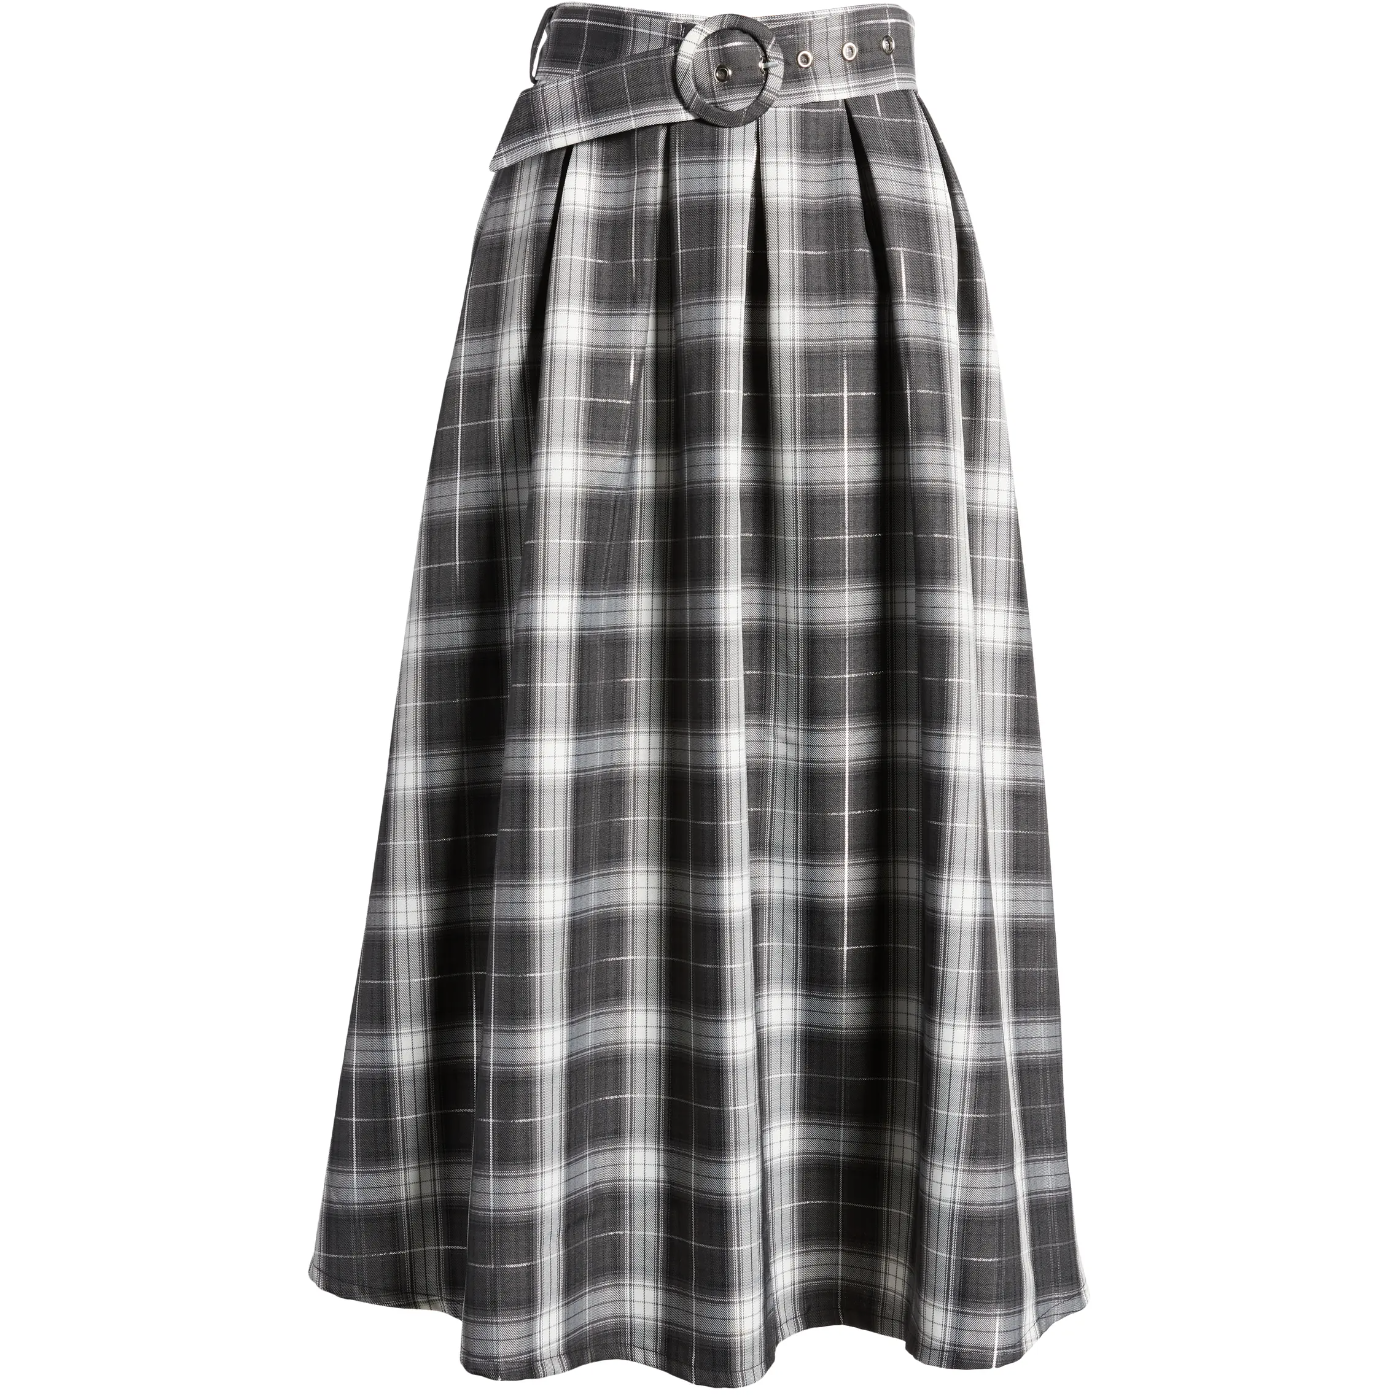 Olivia Plaid Skirt